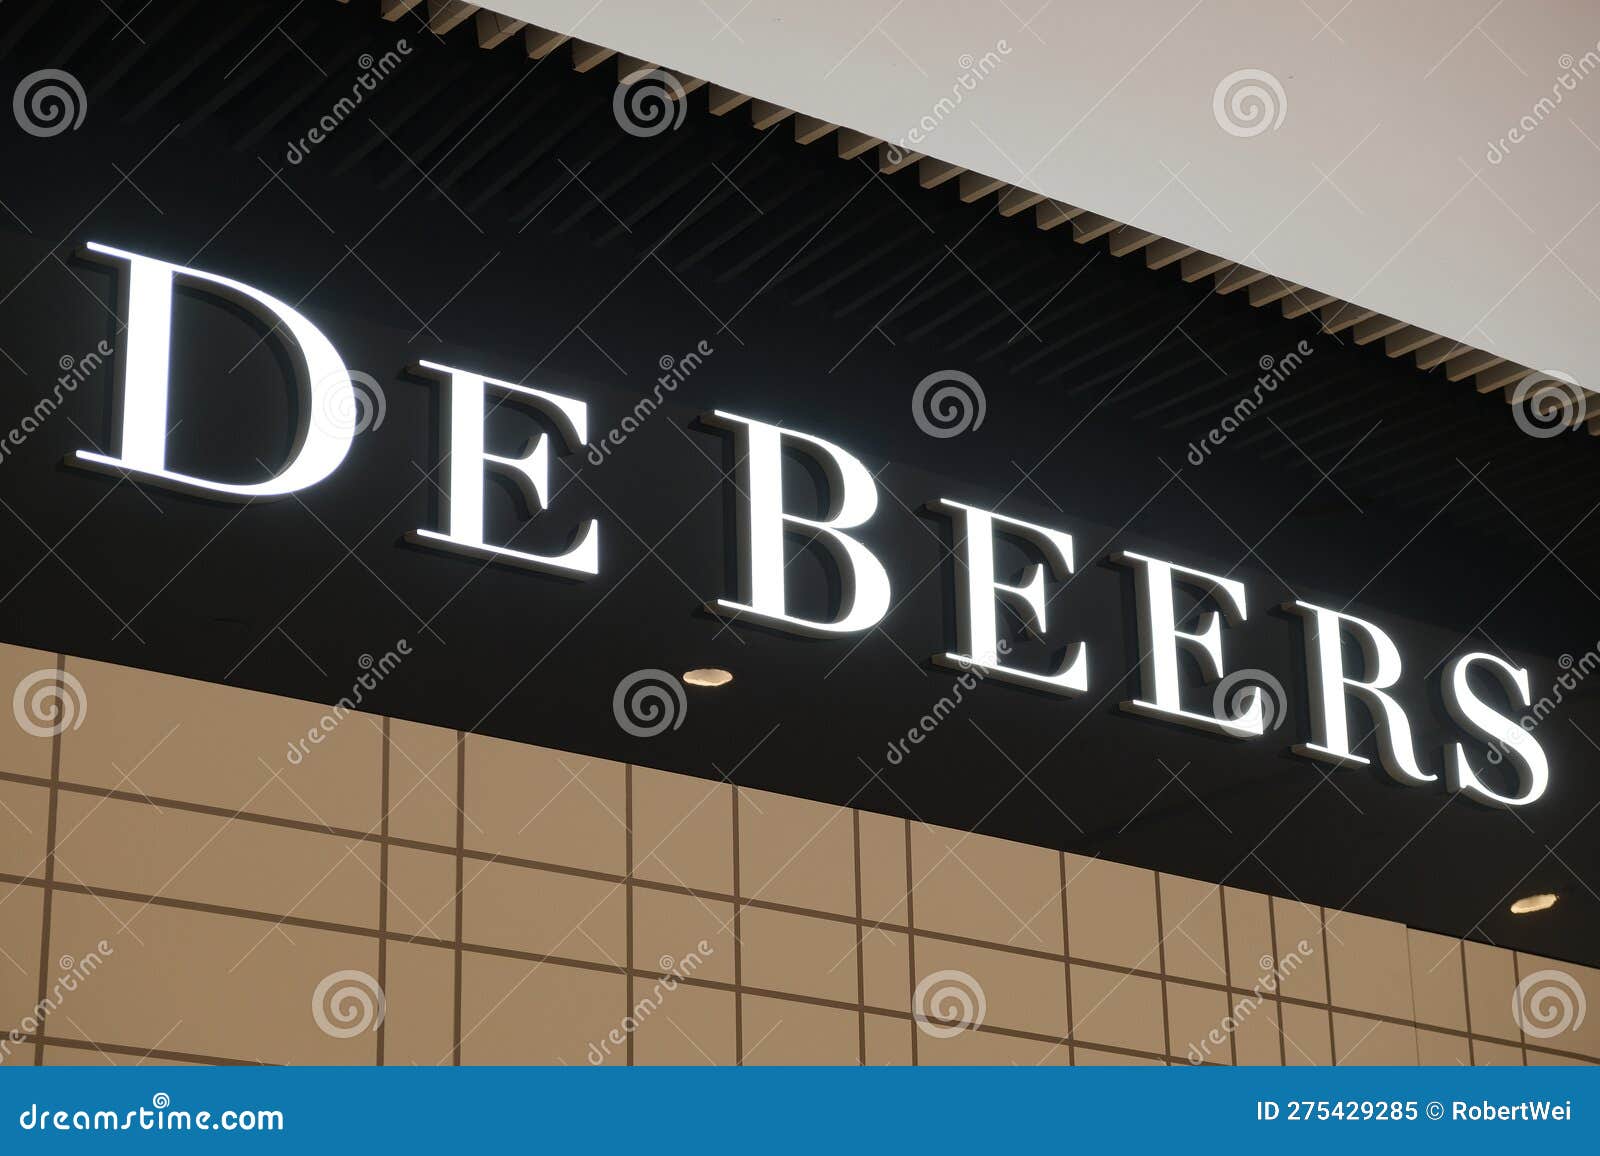 de beers logo